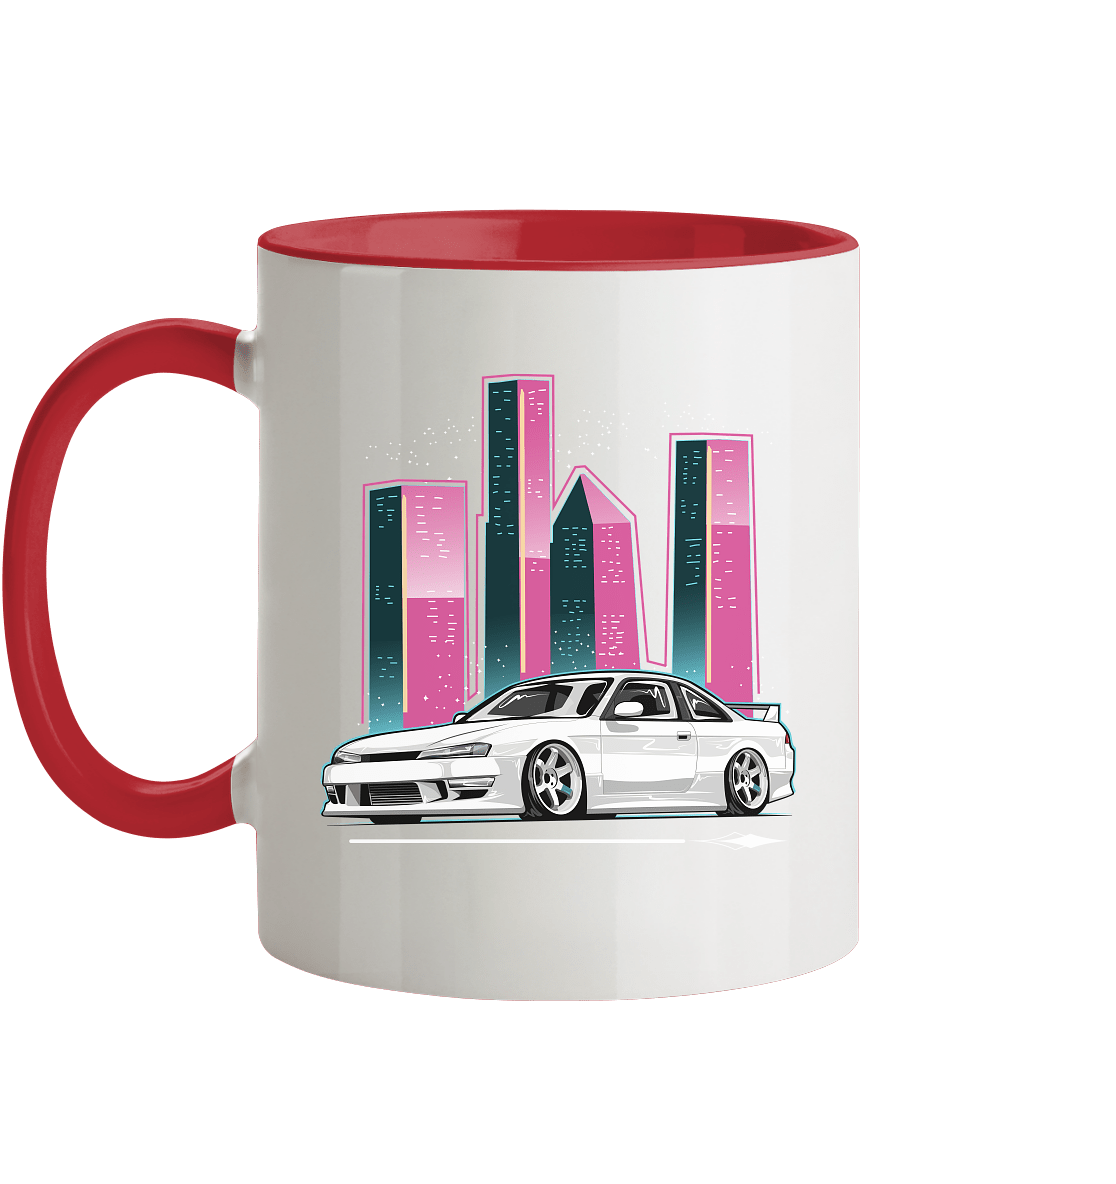 Silvia 200SX S14A - MotoMerch.de